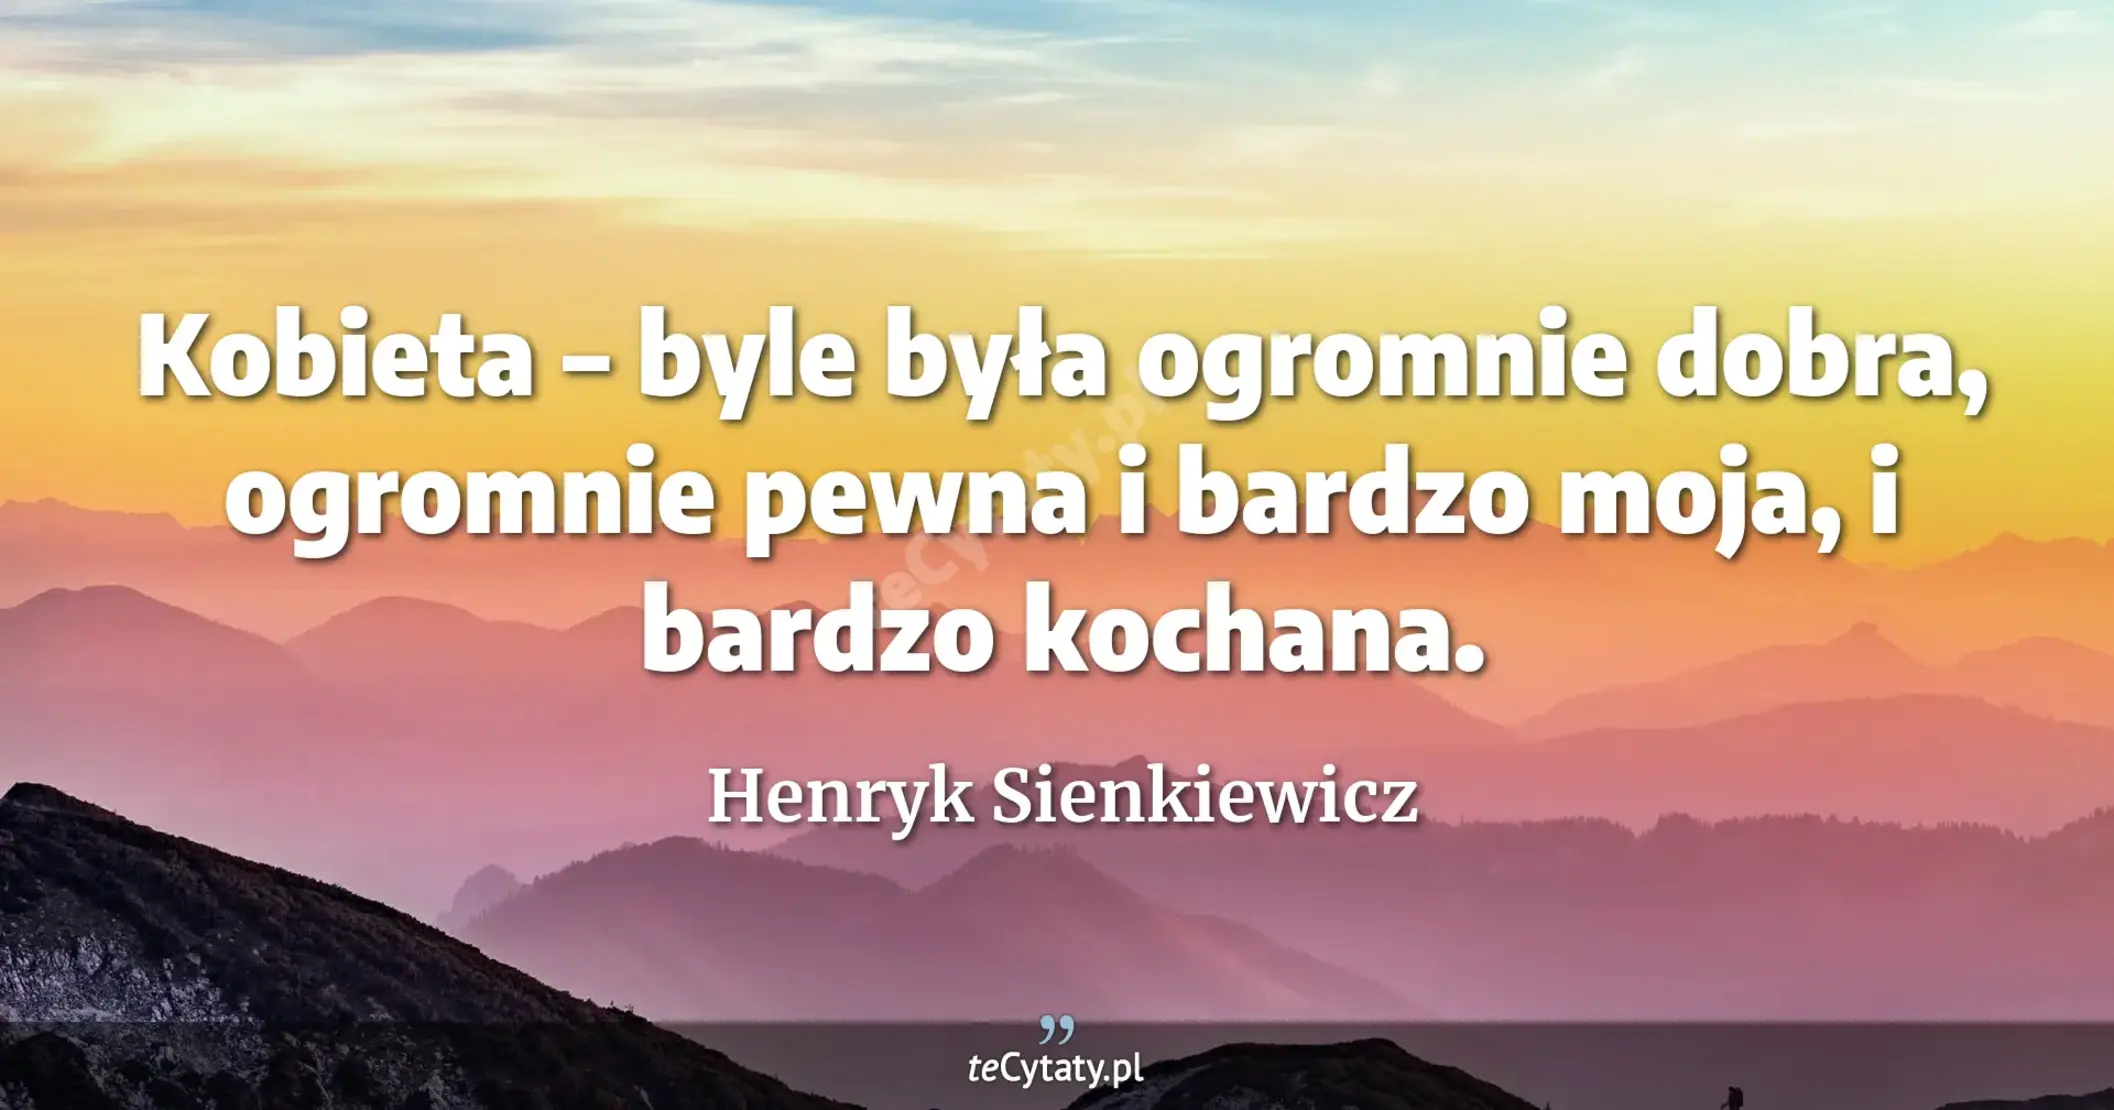 Kobieta – byle była ogromnie dobra, ogromnie pewna i bardzo moja, i bardzo kochana. - Henryk Sienkiewicz